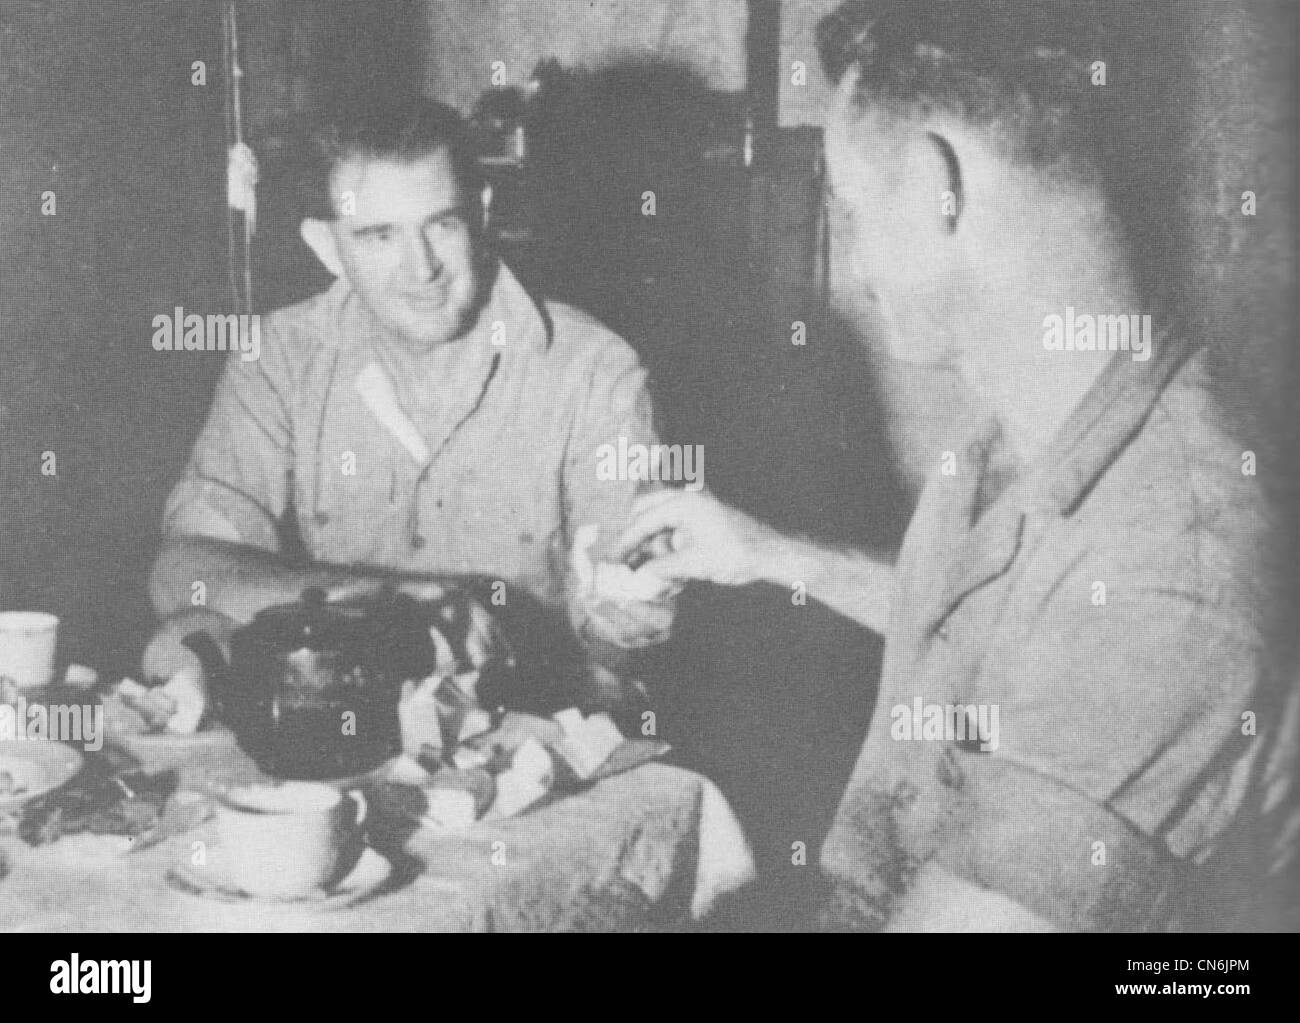 Le Coastwatcher Donald Kennedy (à gauche), qui était en poste à Segi en Nouvelle-Géorgie pendant la campagne des Îles Salomon pendant la Seconde Guerre mondiale Il sert du thé au capitaine de marine américain Clay Boyd lors d'une des missions de scoutisme de Boyd en Nouvelle-Géorgie avant l'opération d'atterrissage des alliés à l'été 1943. Banque D'Images